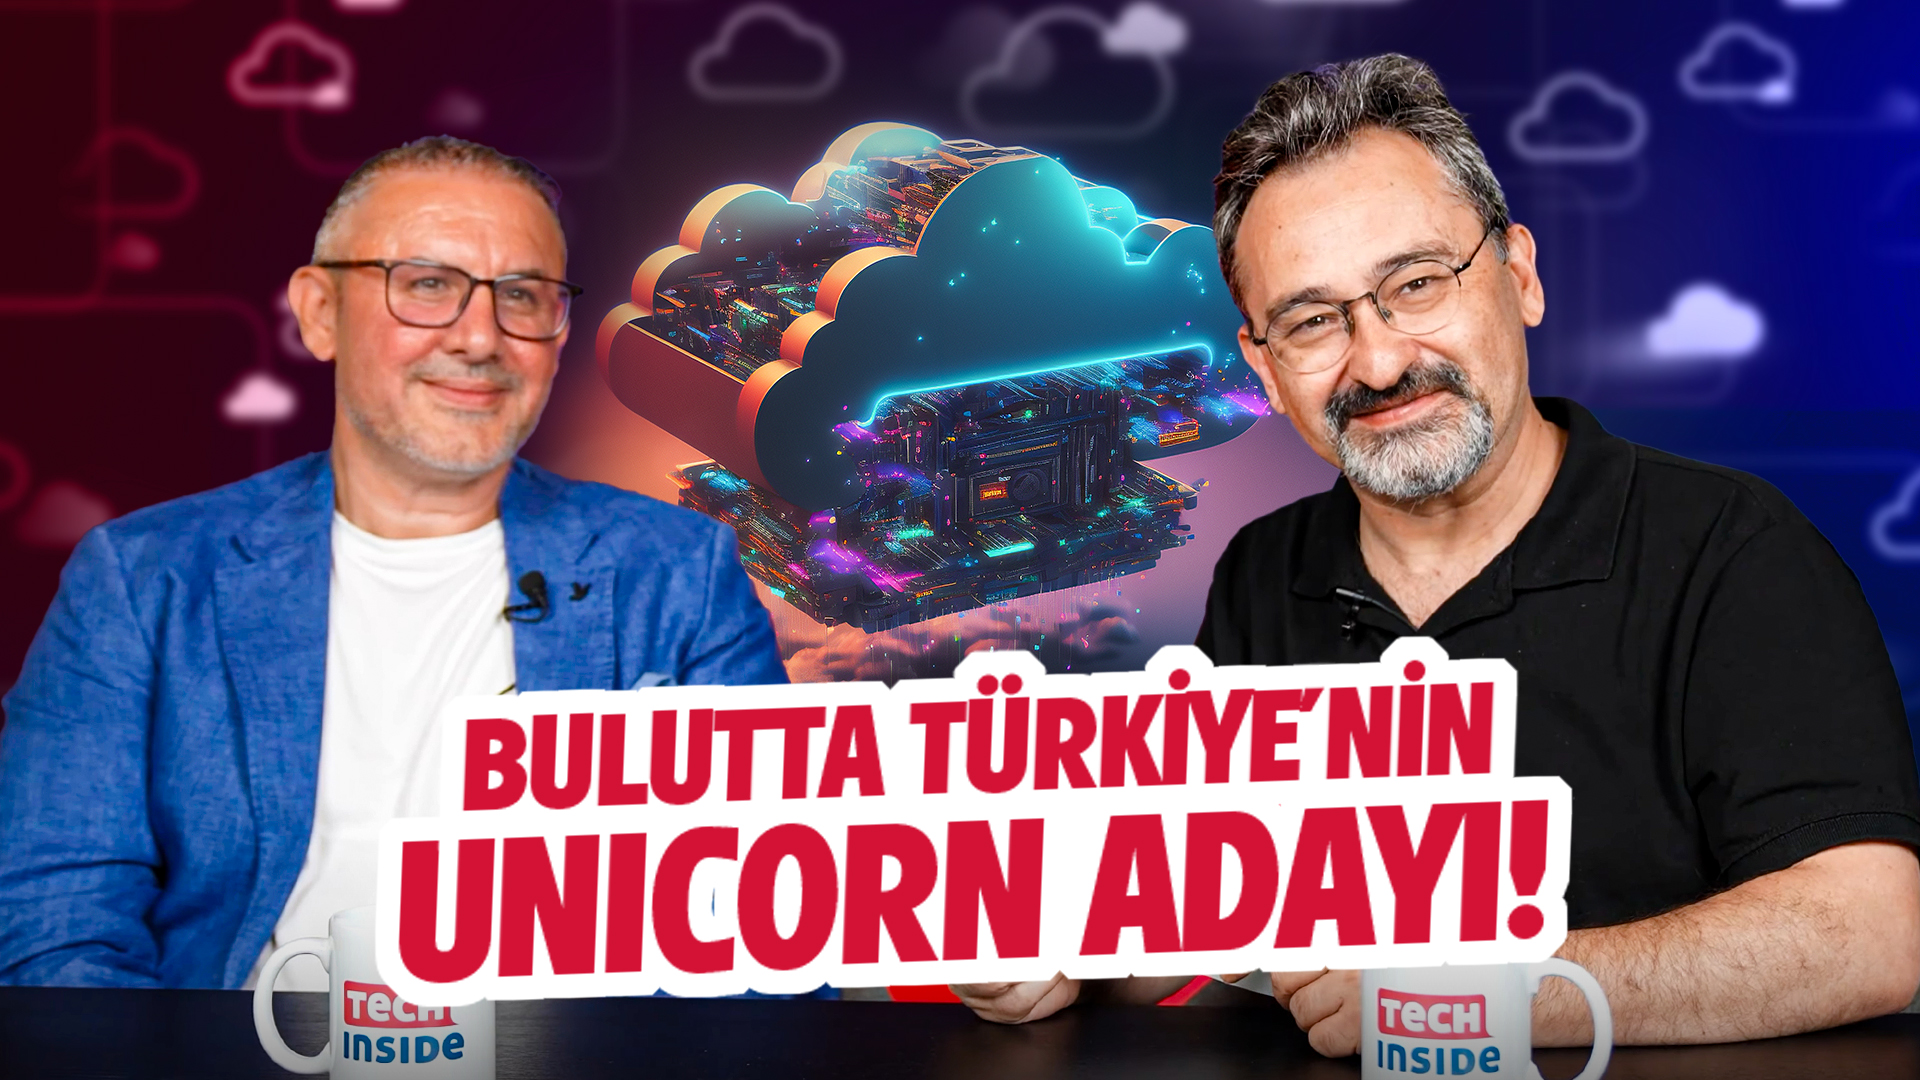 Bulutta Türkiye’nin Unicorn adayı!